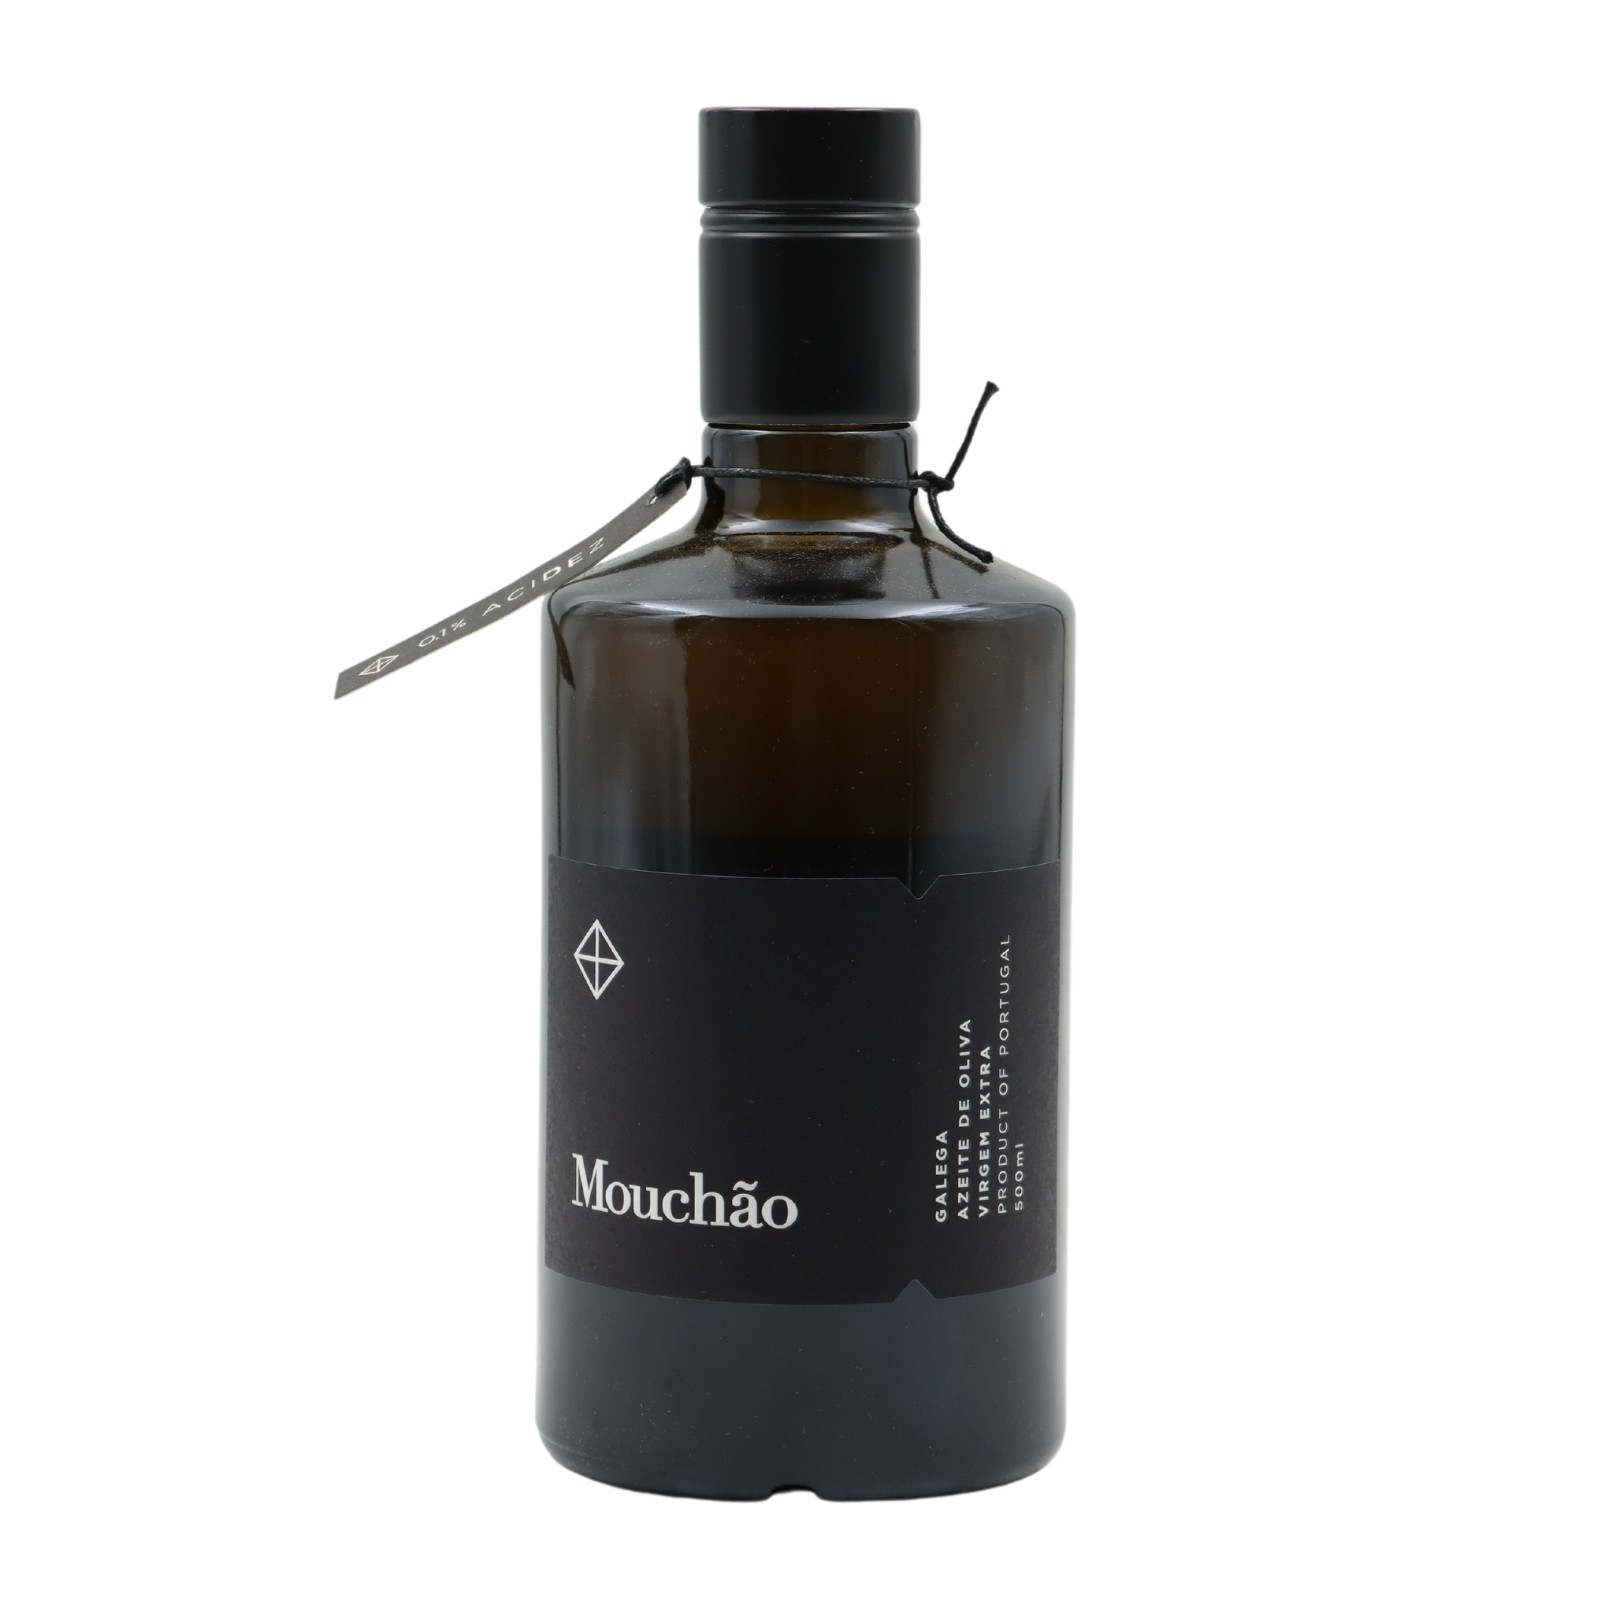 Monte do Mouchão Galega Extra Natives Olivenöl